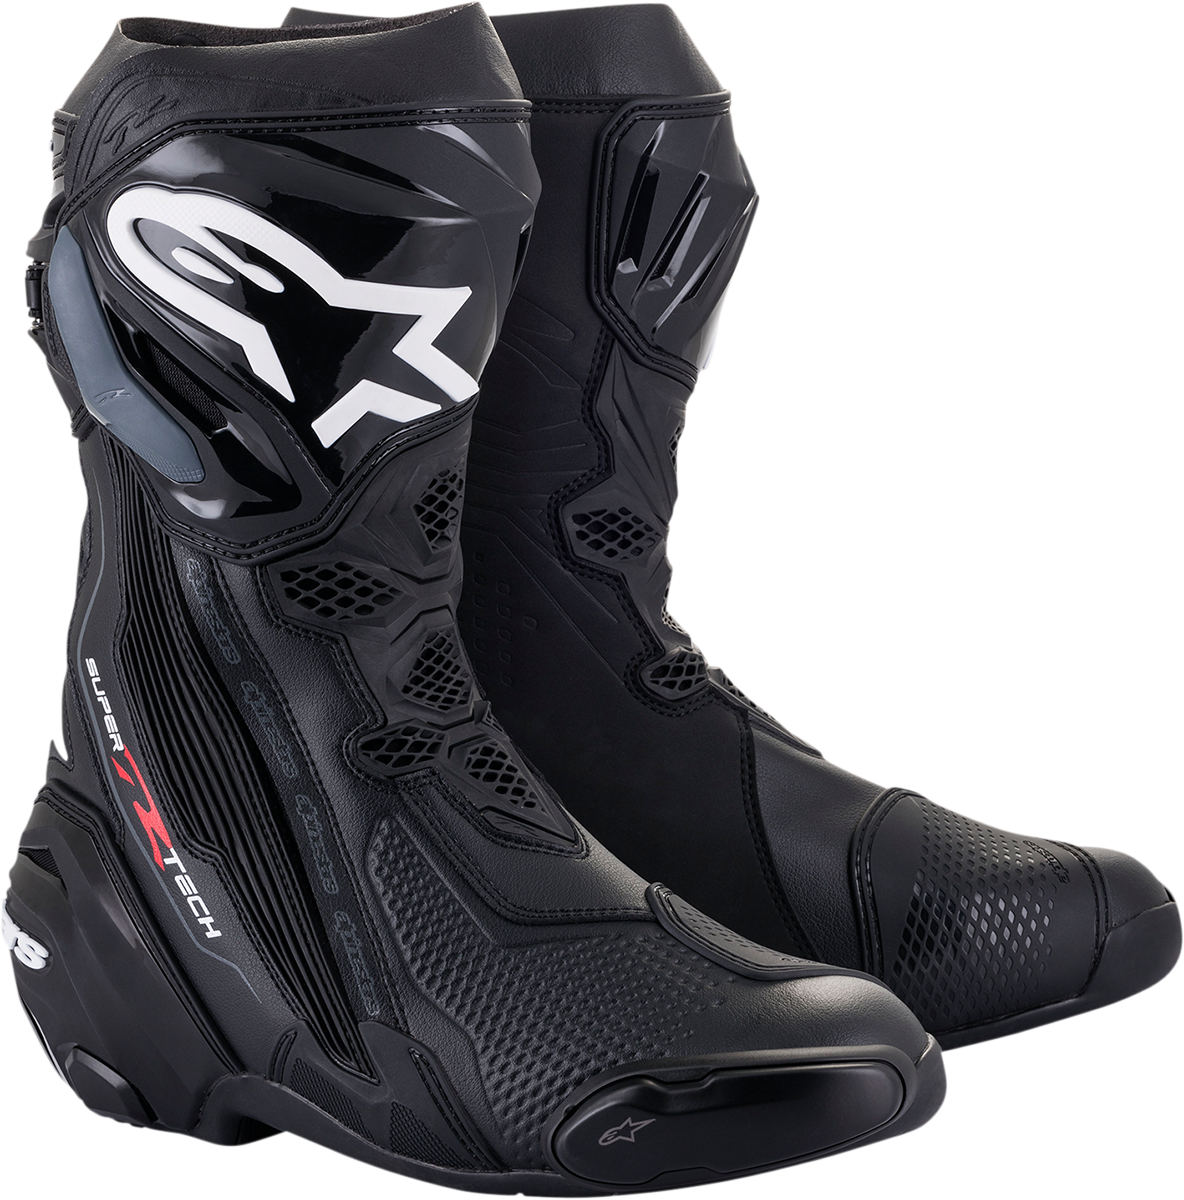 ALPINESTARS Supertech R Boots - Black - US 10.5 / EU 45 2220021-10-45